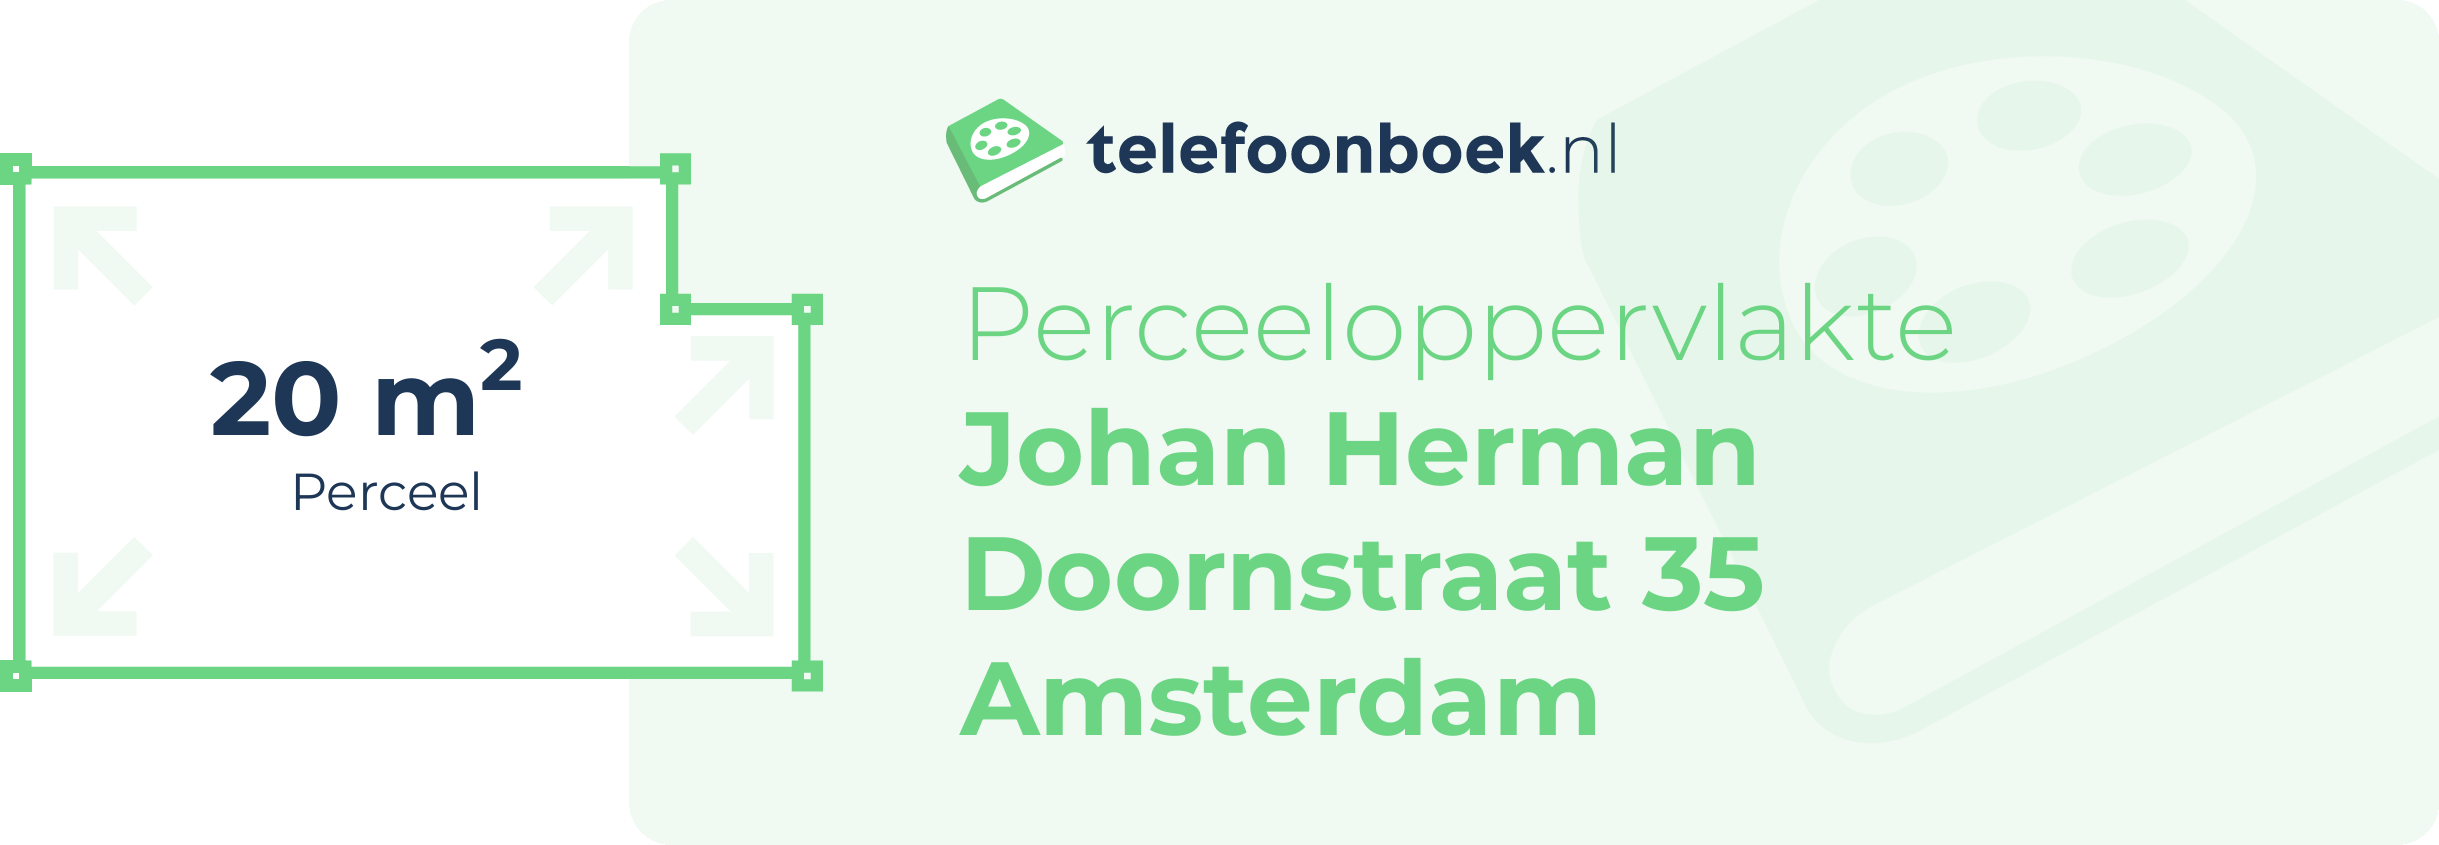 Perceeloppervlakte Johan Herman Doornstraat 35 Amsterdam